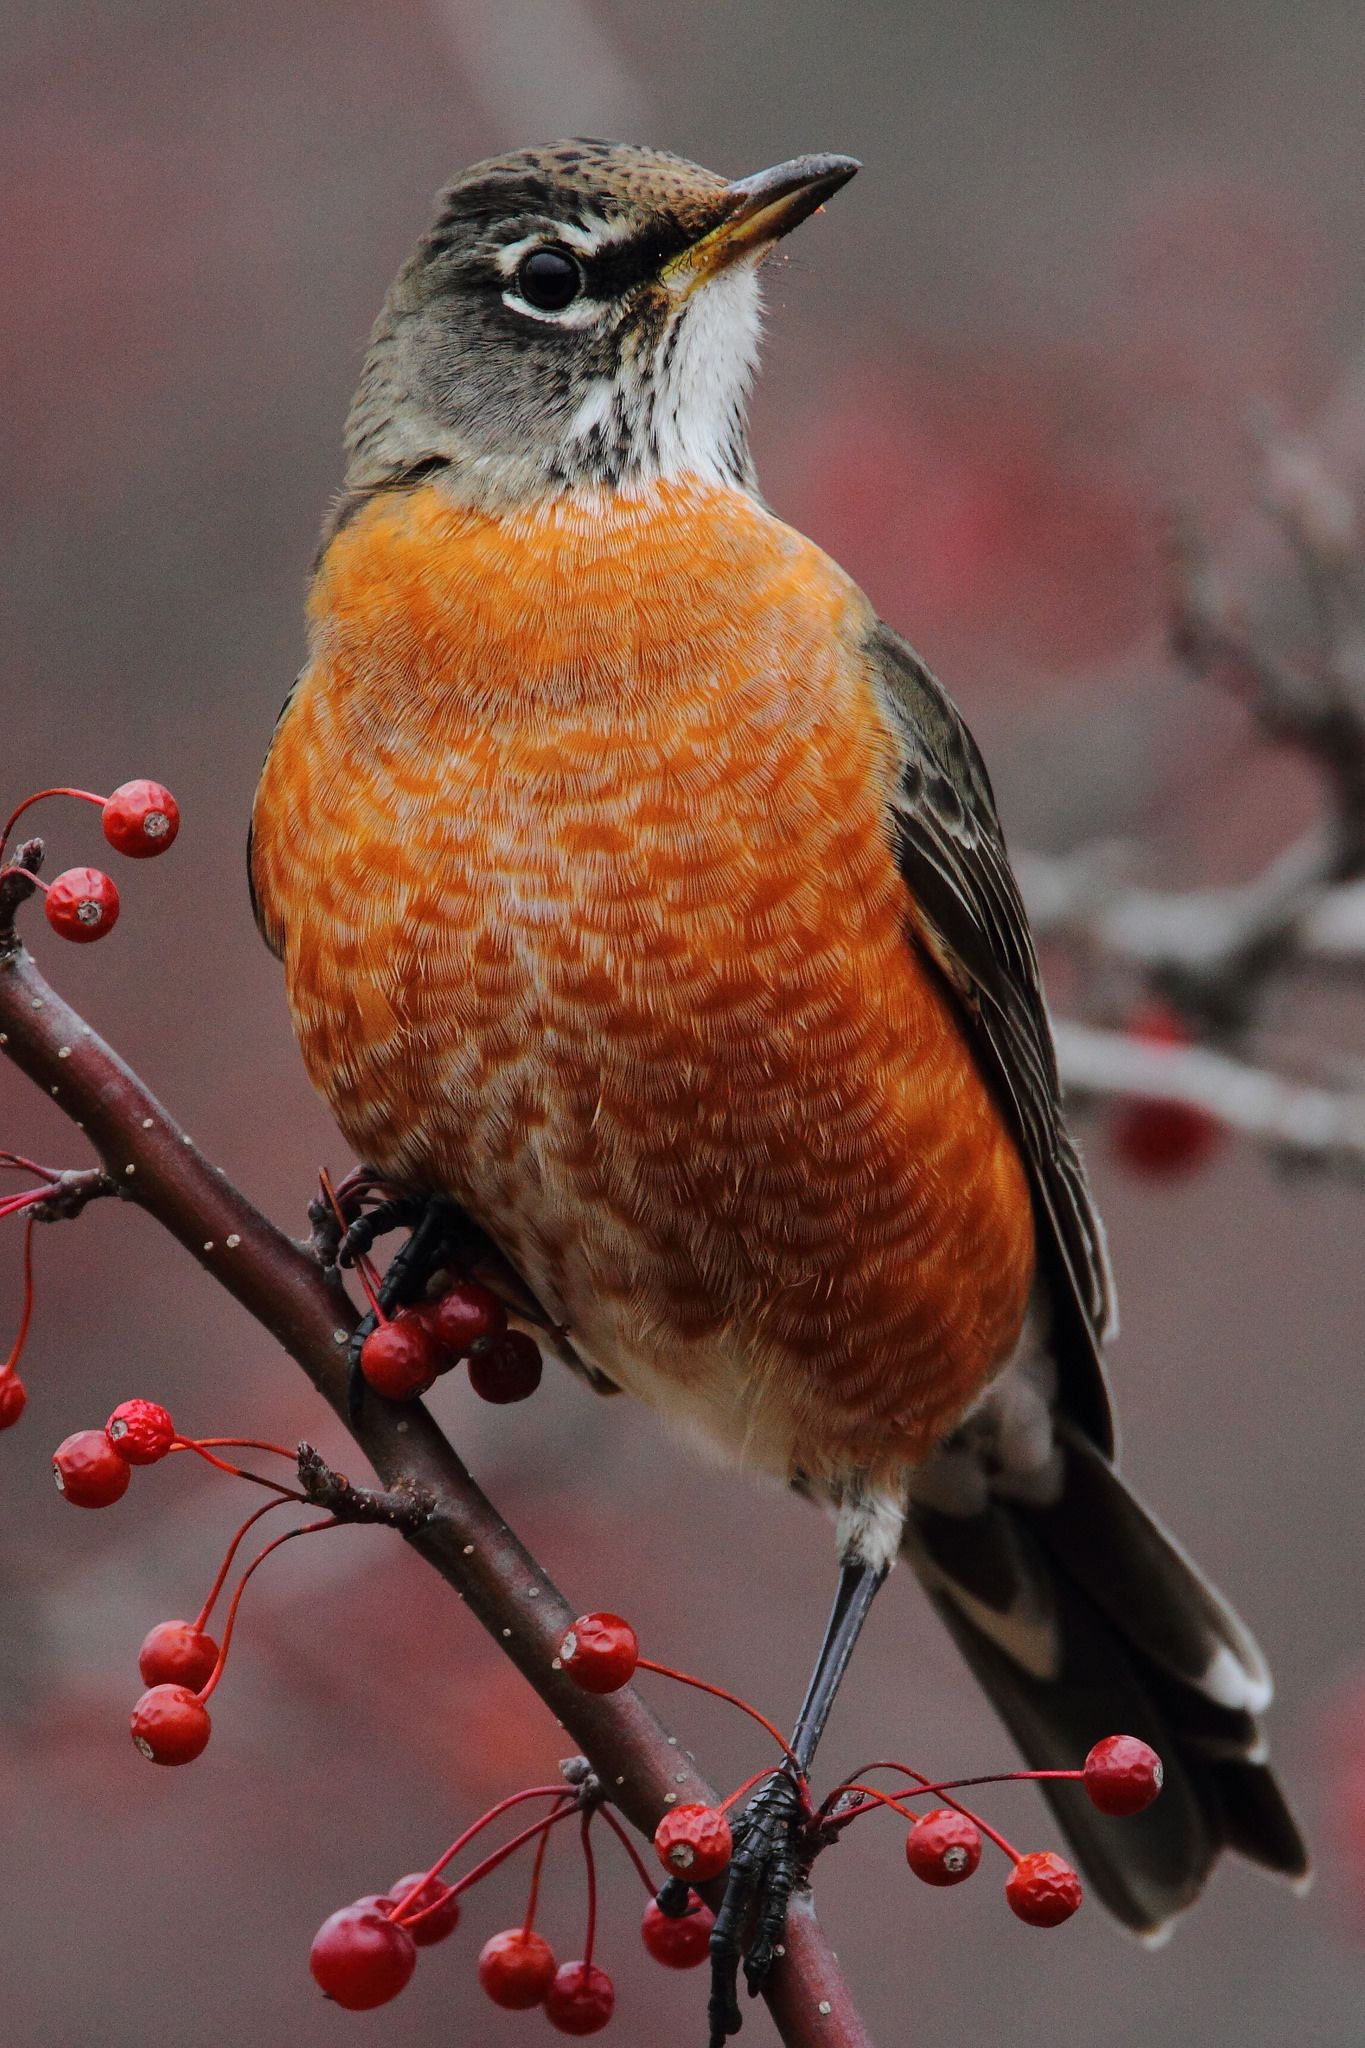 Tổng Hợp Những Thông Tin Thú Vị Về Loài Chim Họa Mi Đất - Yêu Chim